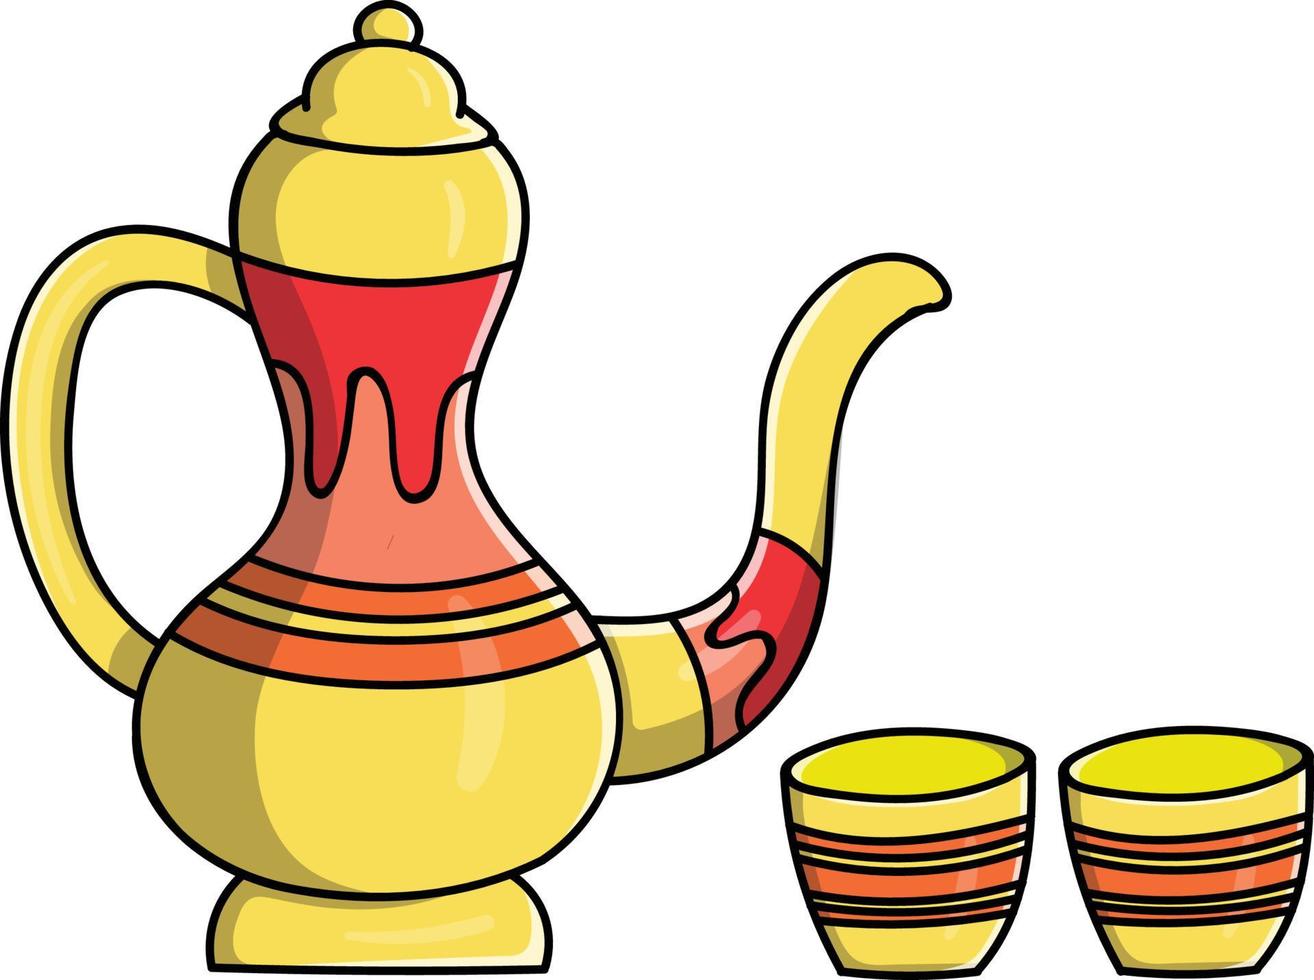 Vektorillustration von Zamzam-Wasser mit einem kleinen Glas und einer typischen arabischen Teekanne. Ideal für Dekorationen, Aufkleber, Banner, Werbung, soziale Medien, Zeitschriften, Bücher, Malbücher. vektor